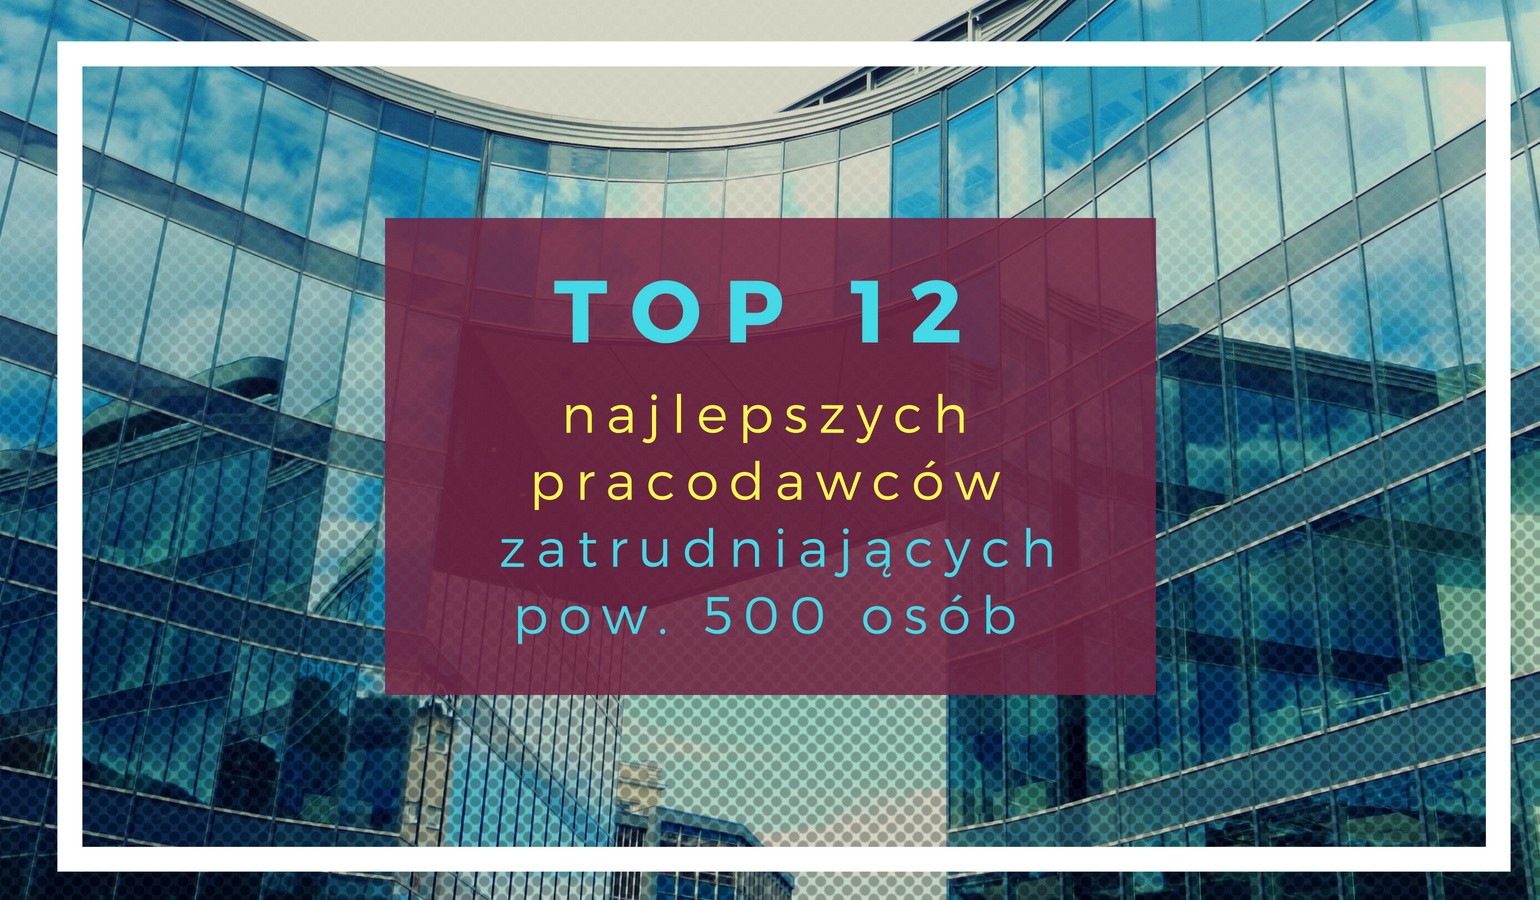 Top 12 najlepszych pracodawców w Polsce [RANKING]